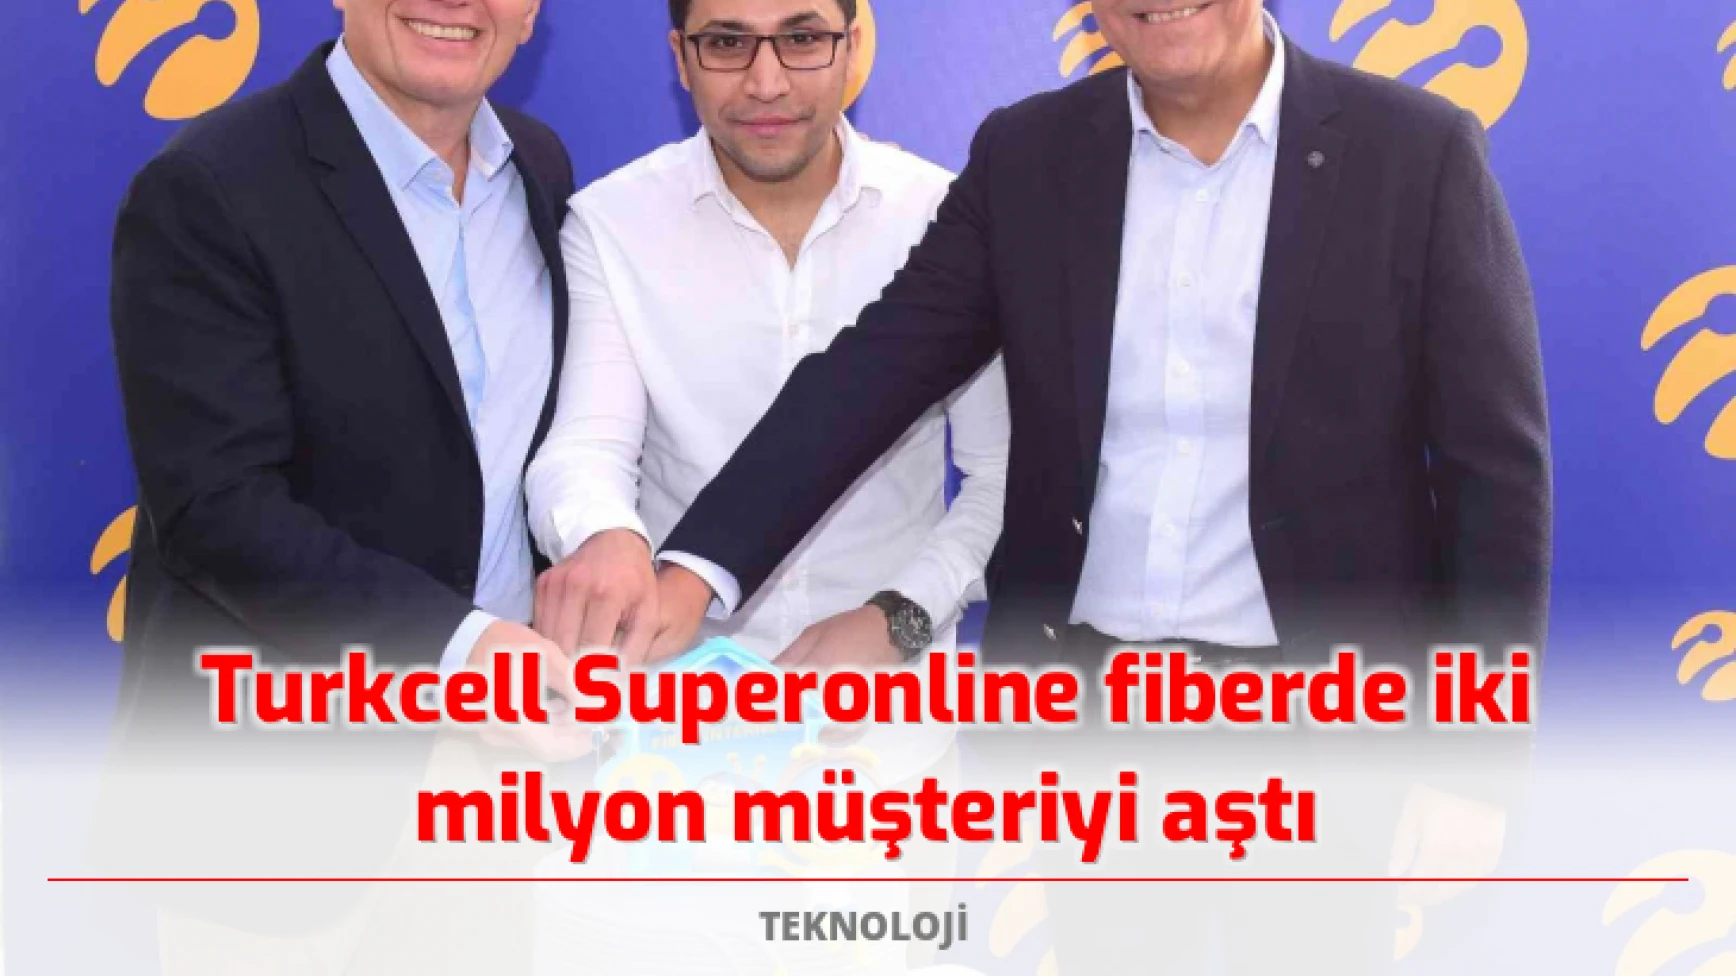 Turkcell Superonline fiberde iki milyon müşteriyi aştı